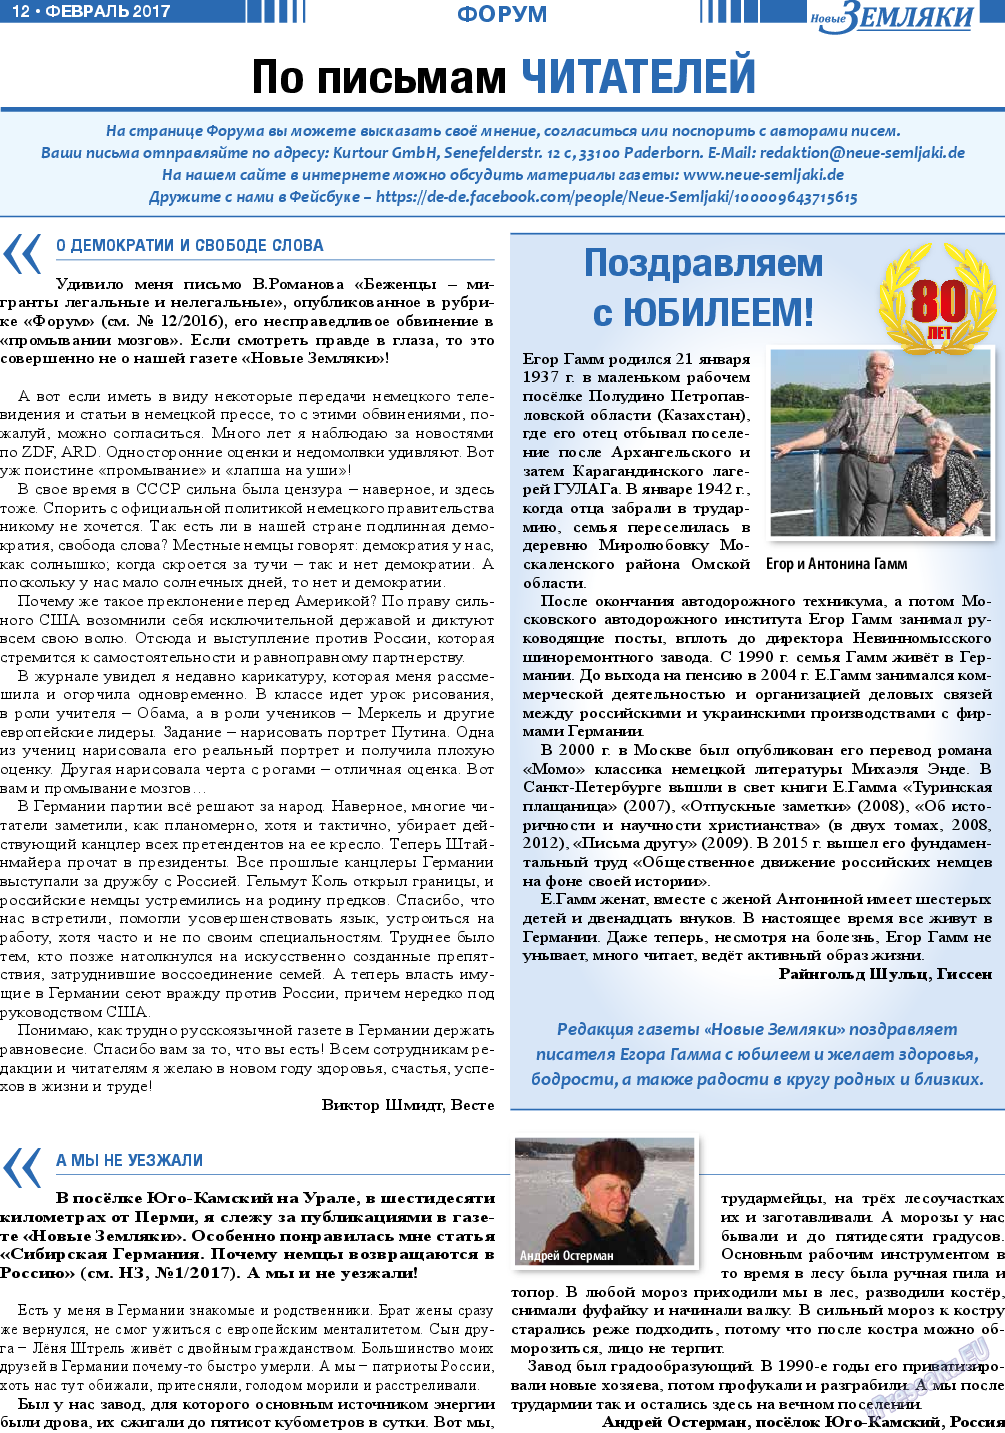 Новые Земляки, газета. 2017 №2 стр.12